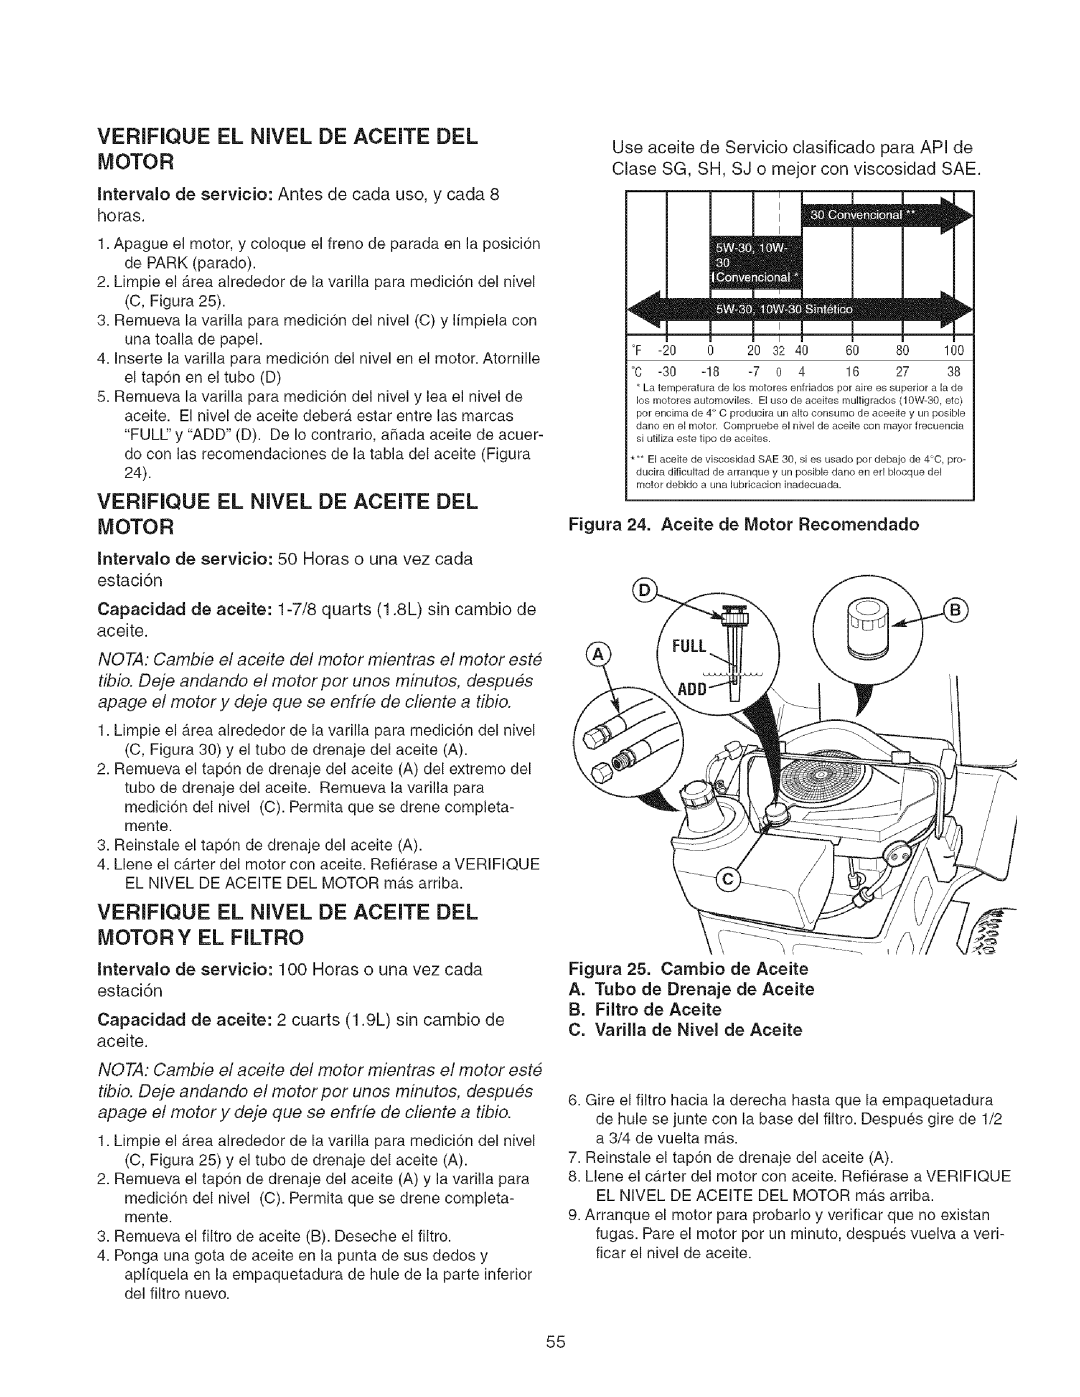 Craftsman 107.27768 manual E Id, A. Tubo de Drenaje de Aceite B.Filtro de Aceite, C.Varilla de Nivel de Aceite 